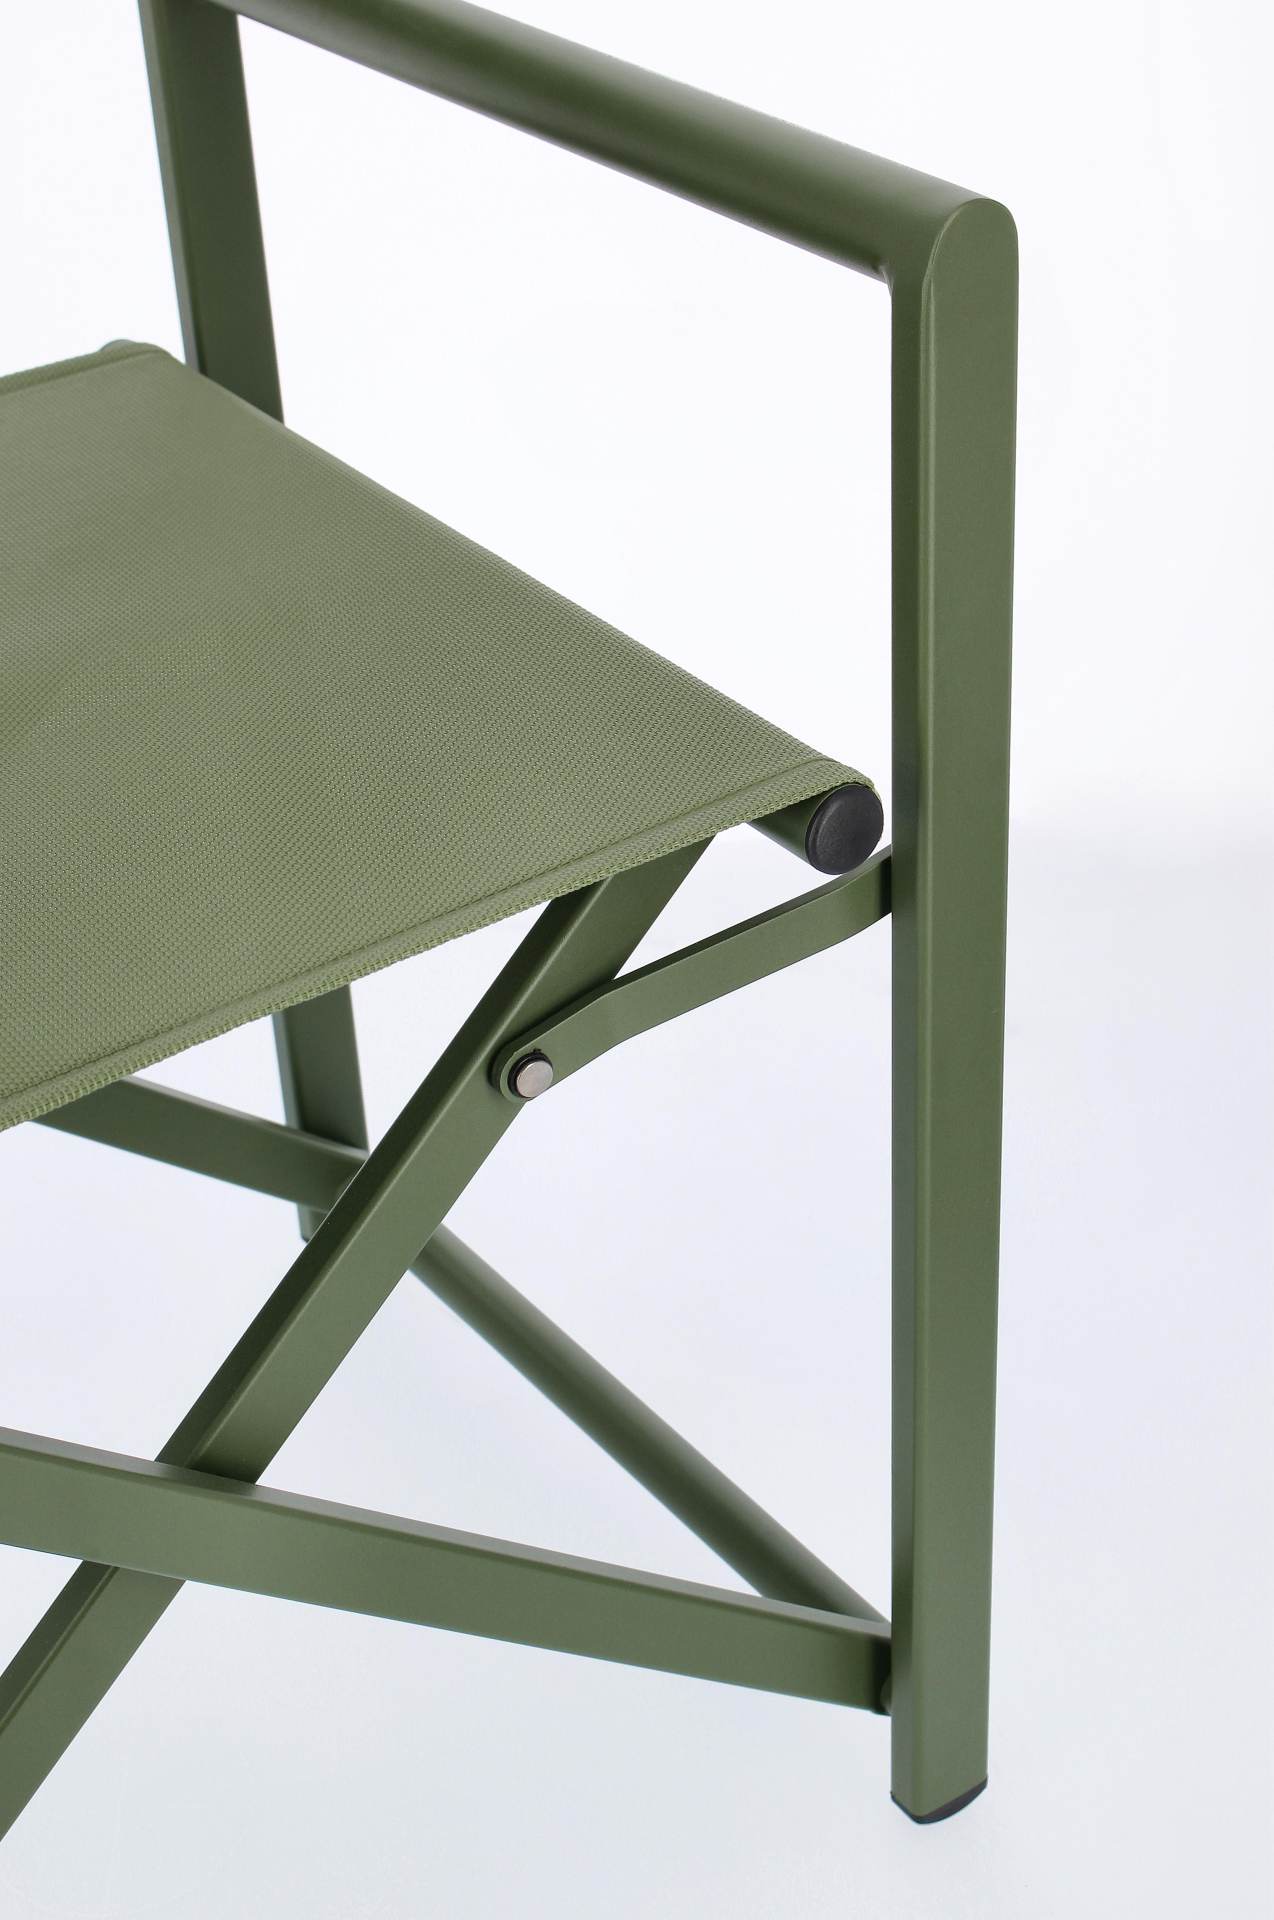 Der Gartenstuhl Taylor überzeugt mit seinem modernen Design. Gefertigt wurde er aus Textilene, welche einen grünen Farbton besitzt. Das Gestell ist aus Aluminium und hat auch eine grüne Farbe. Der Stuhl verfügt über eine Sitzhöhe von 45 cm und ist für den